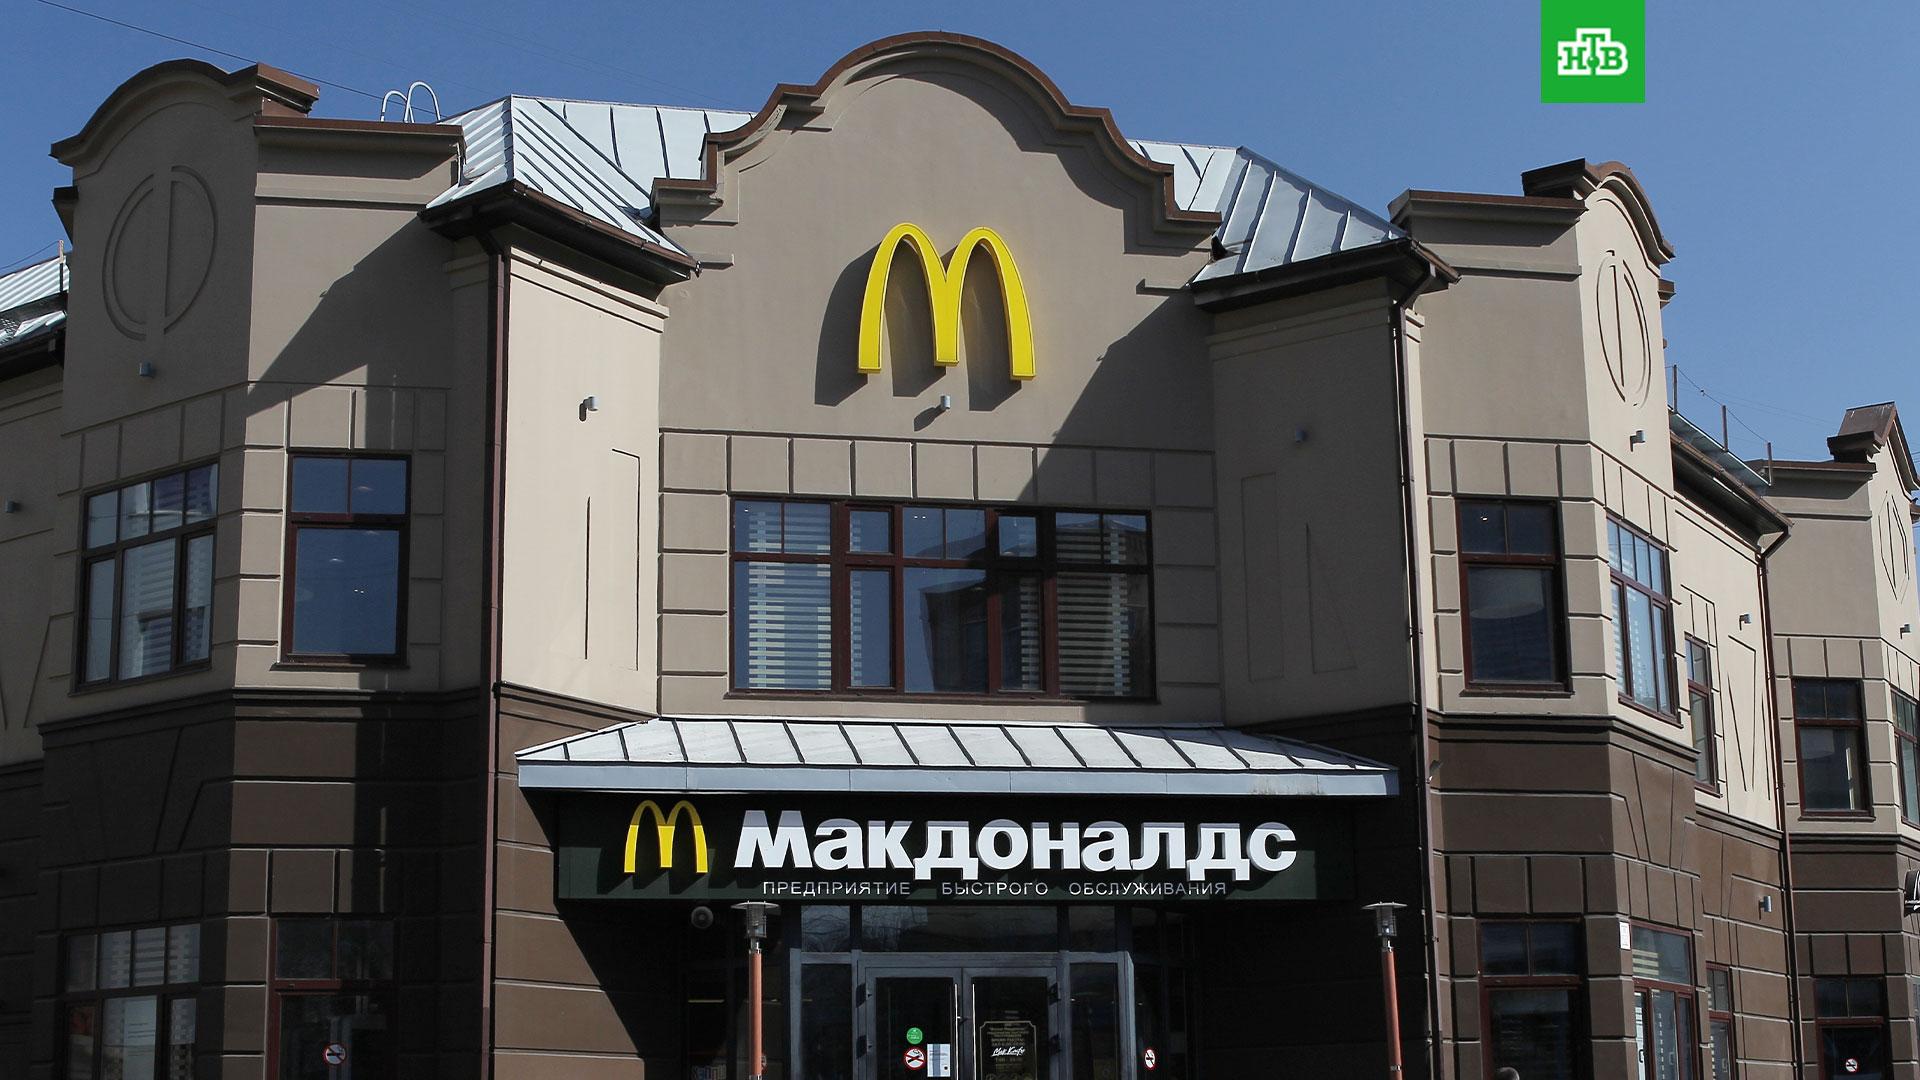 Где находится макдональдс в иркутске – Адреса ресторанов Макдональдс в г. Иркутск